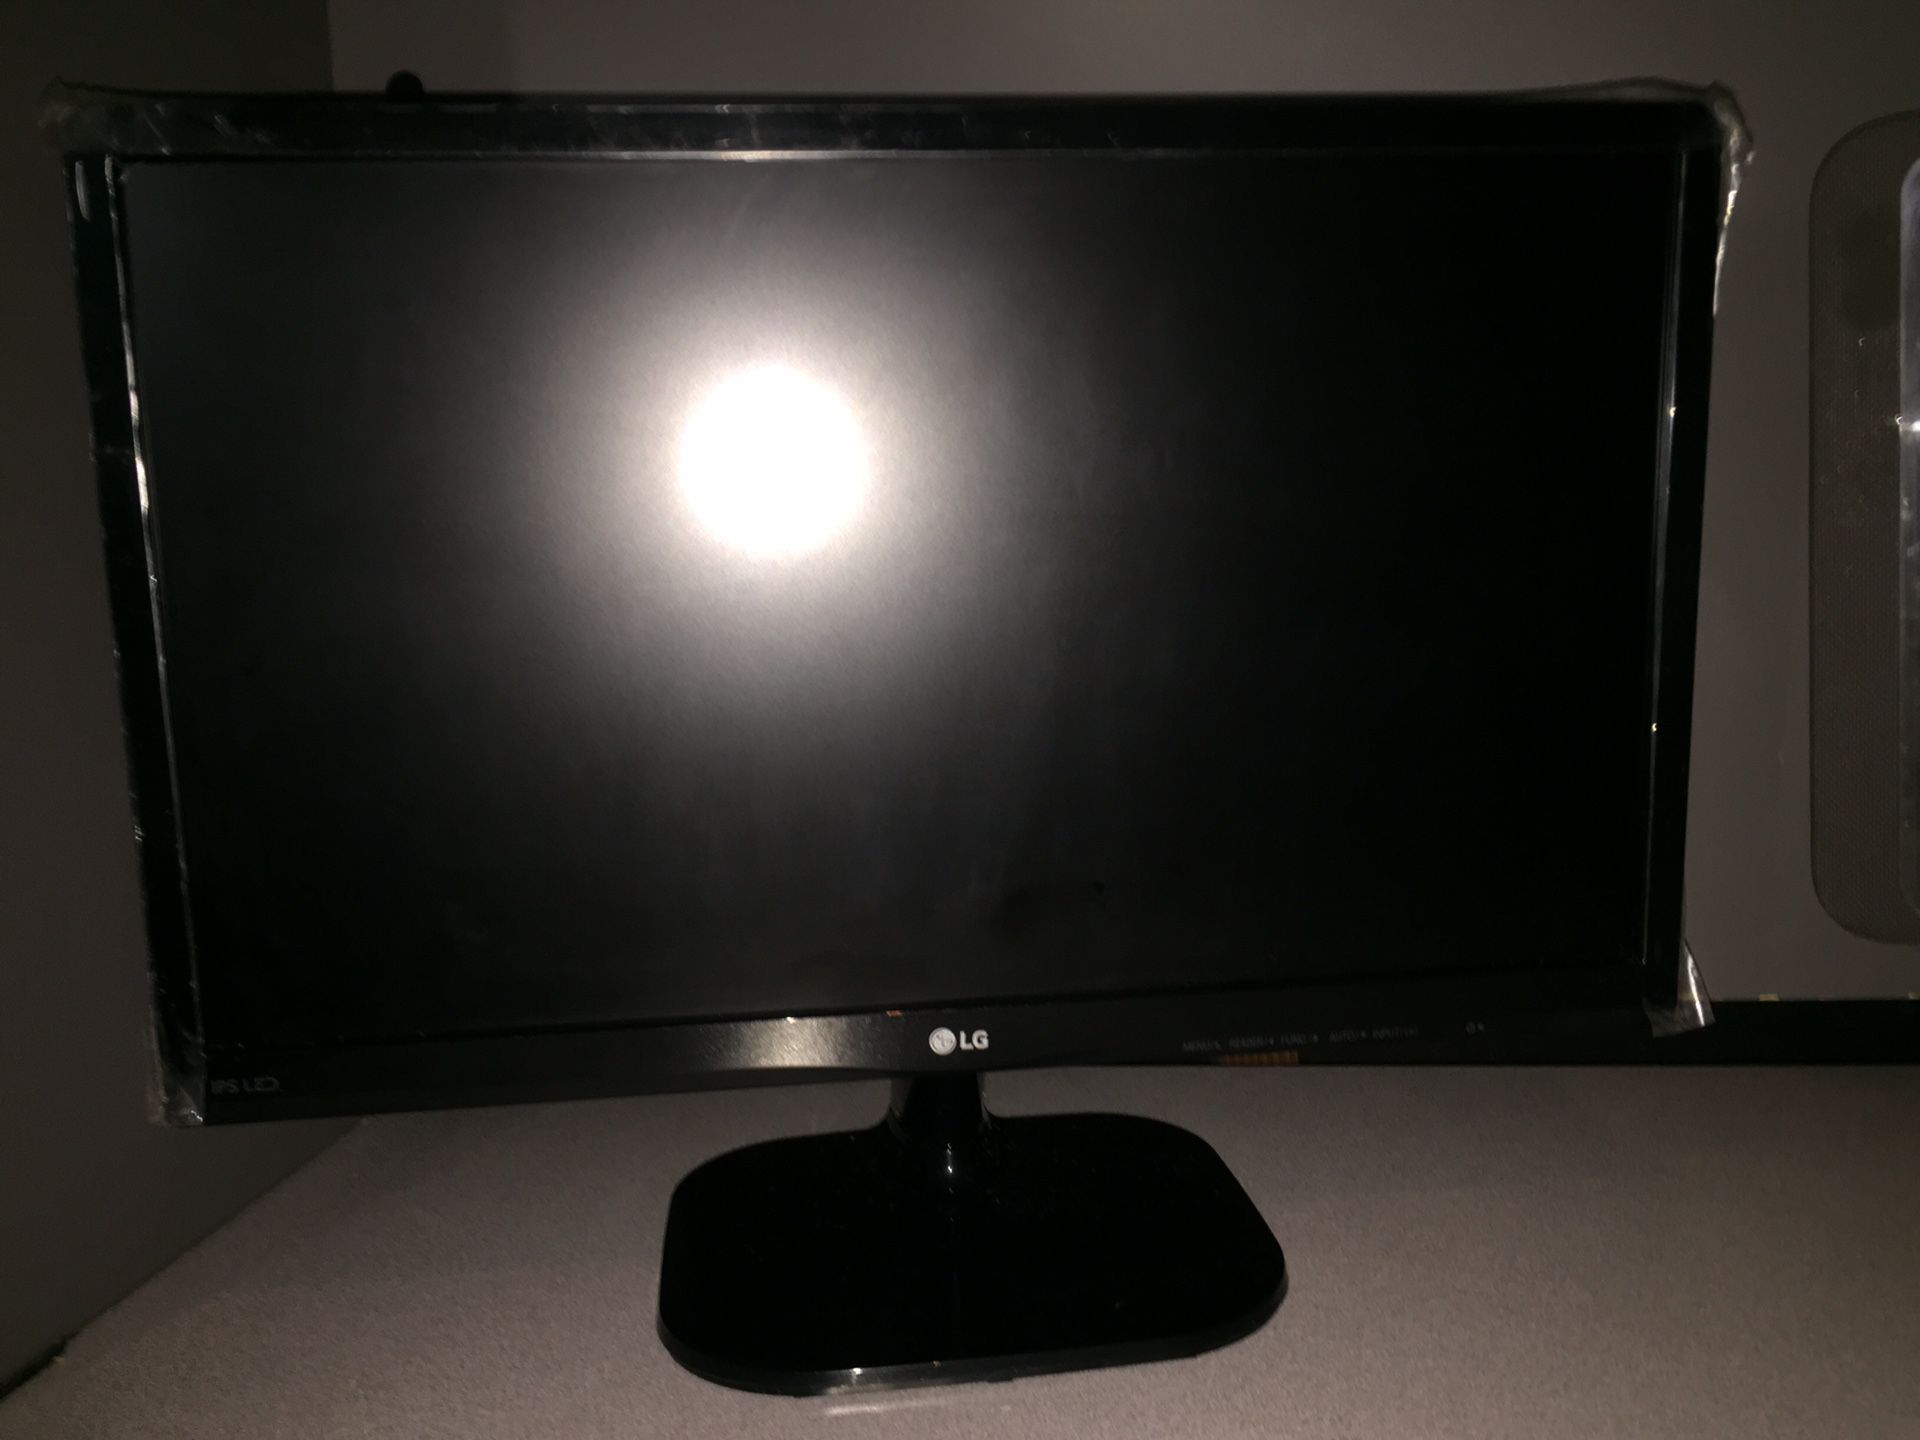 LG Computer Monitor 21.5”